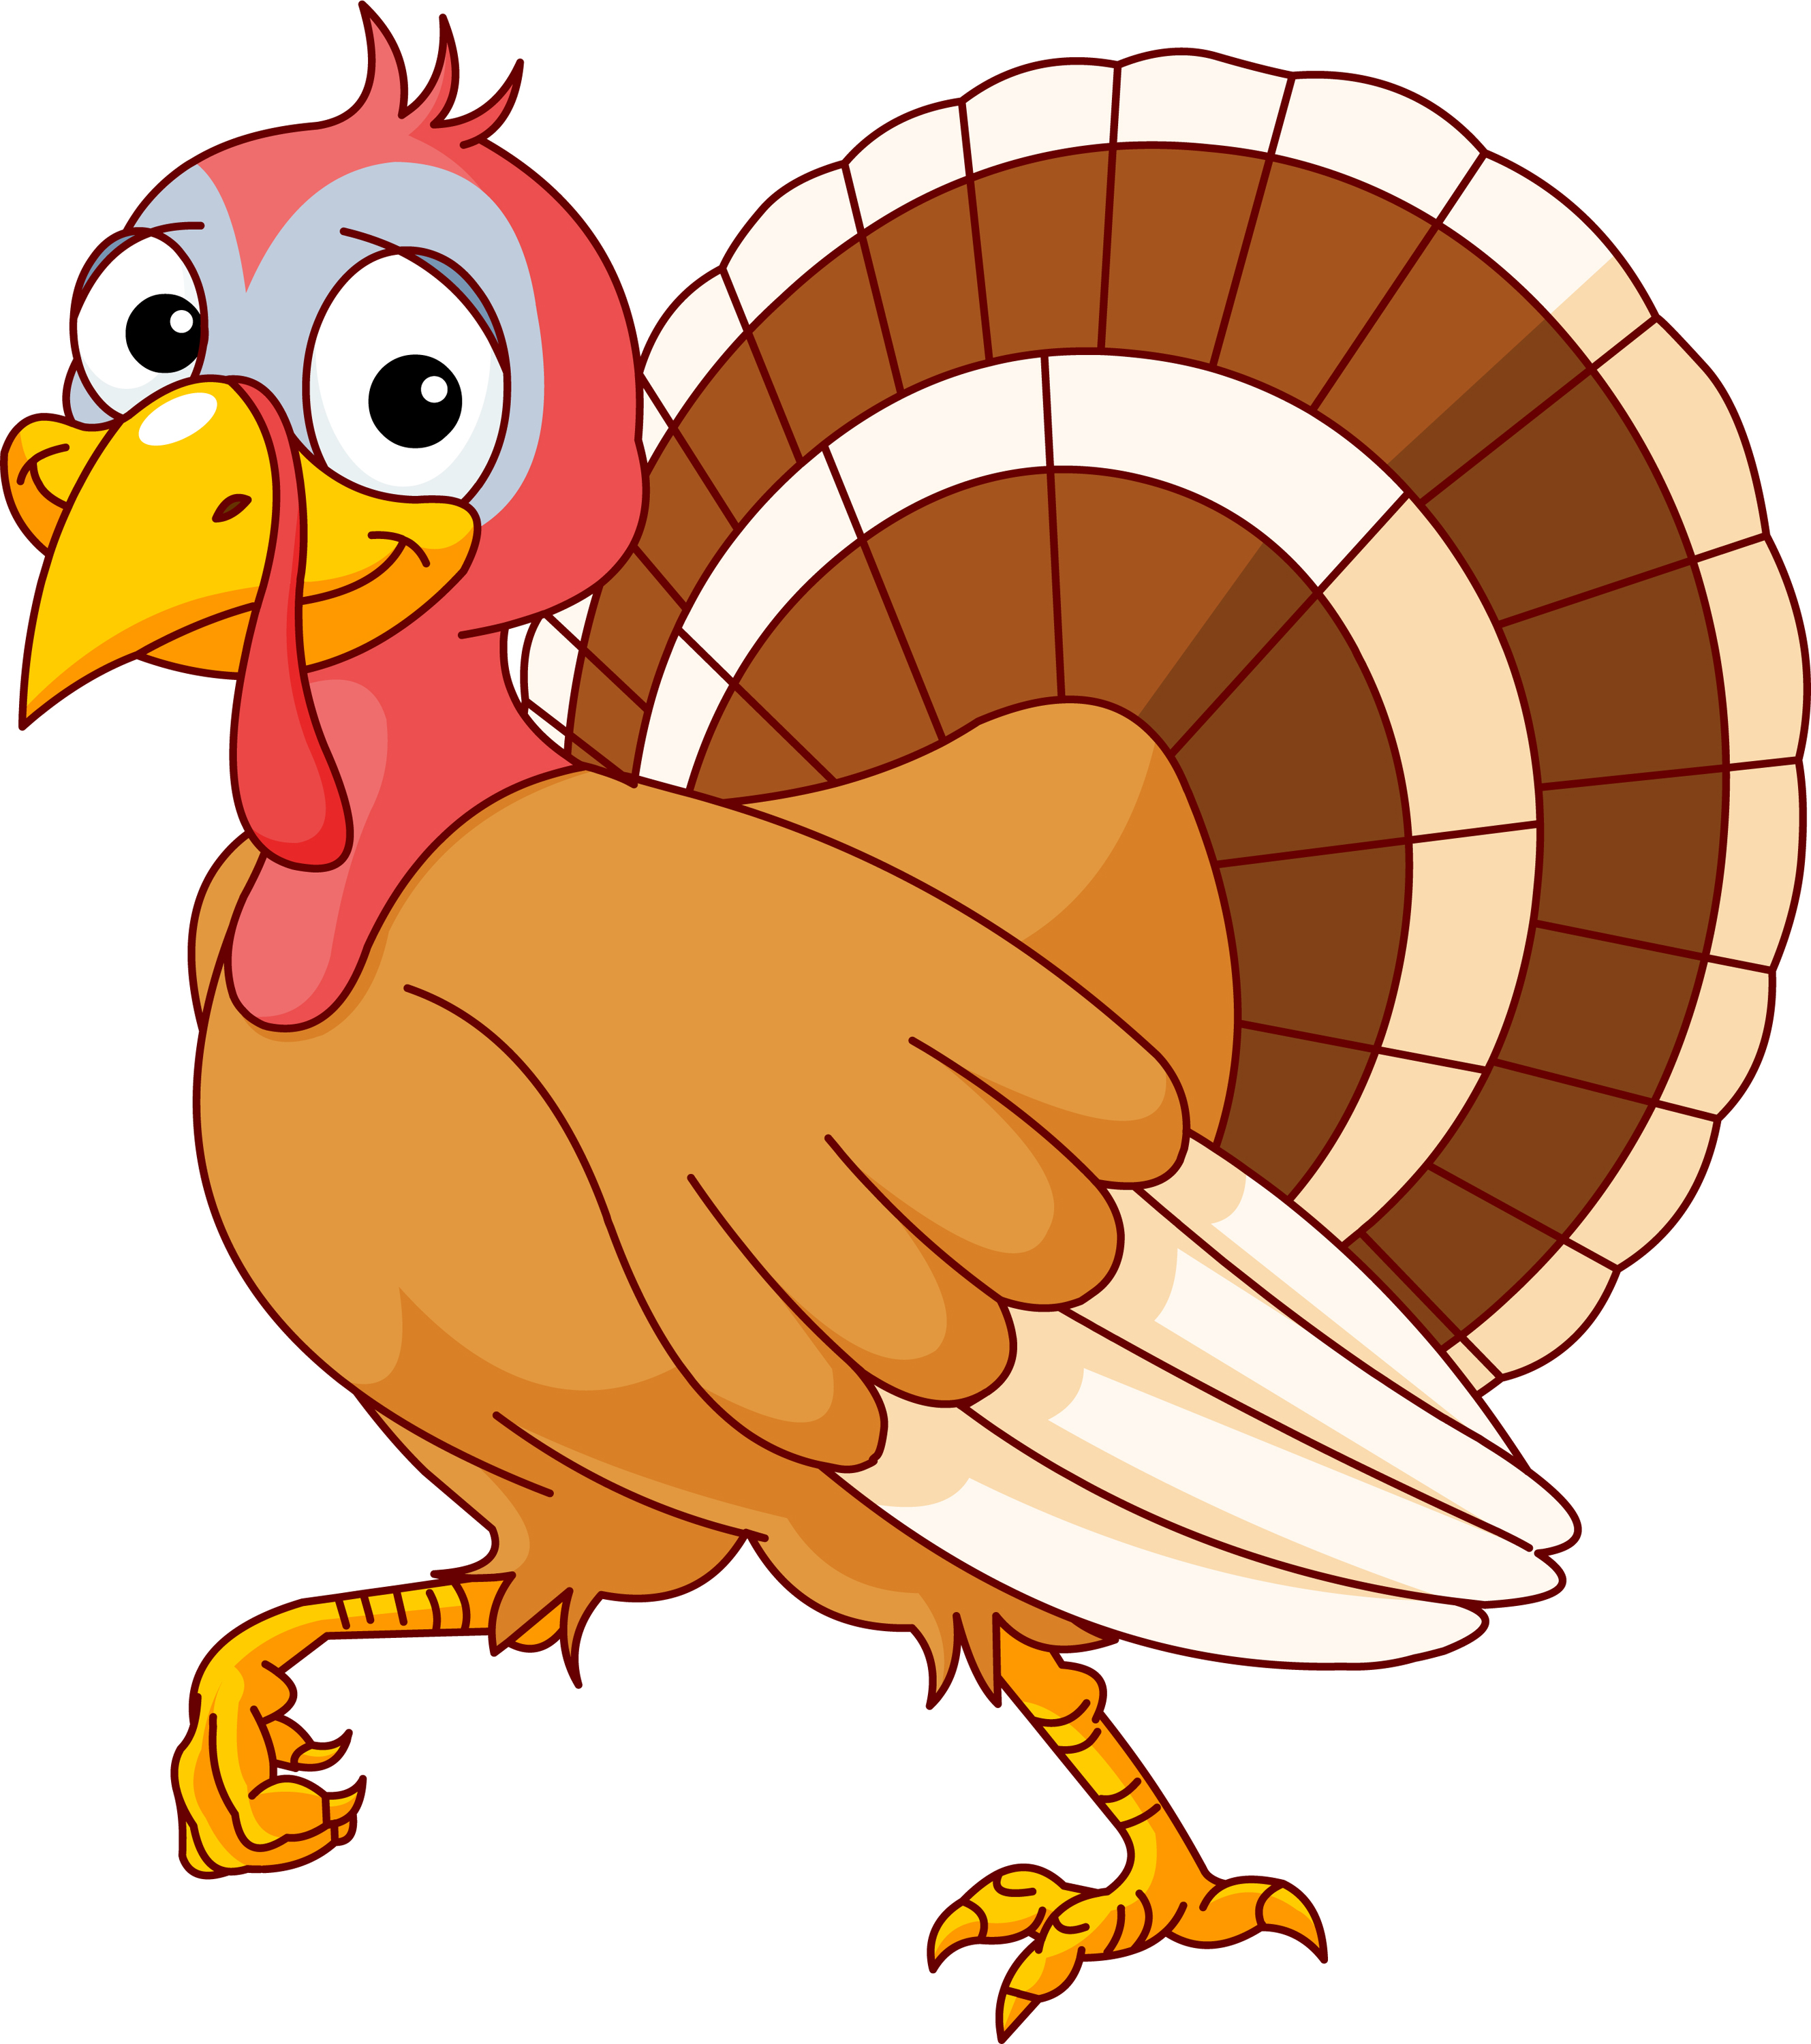 Cute turkey clipart tumundogr - Cute Turkey Clipart